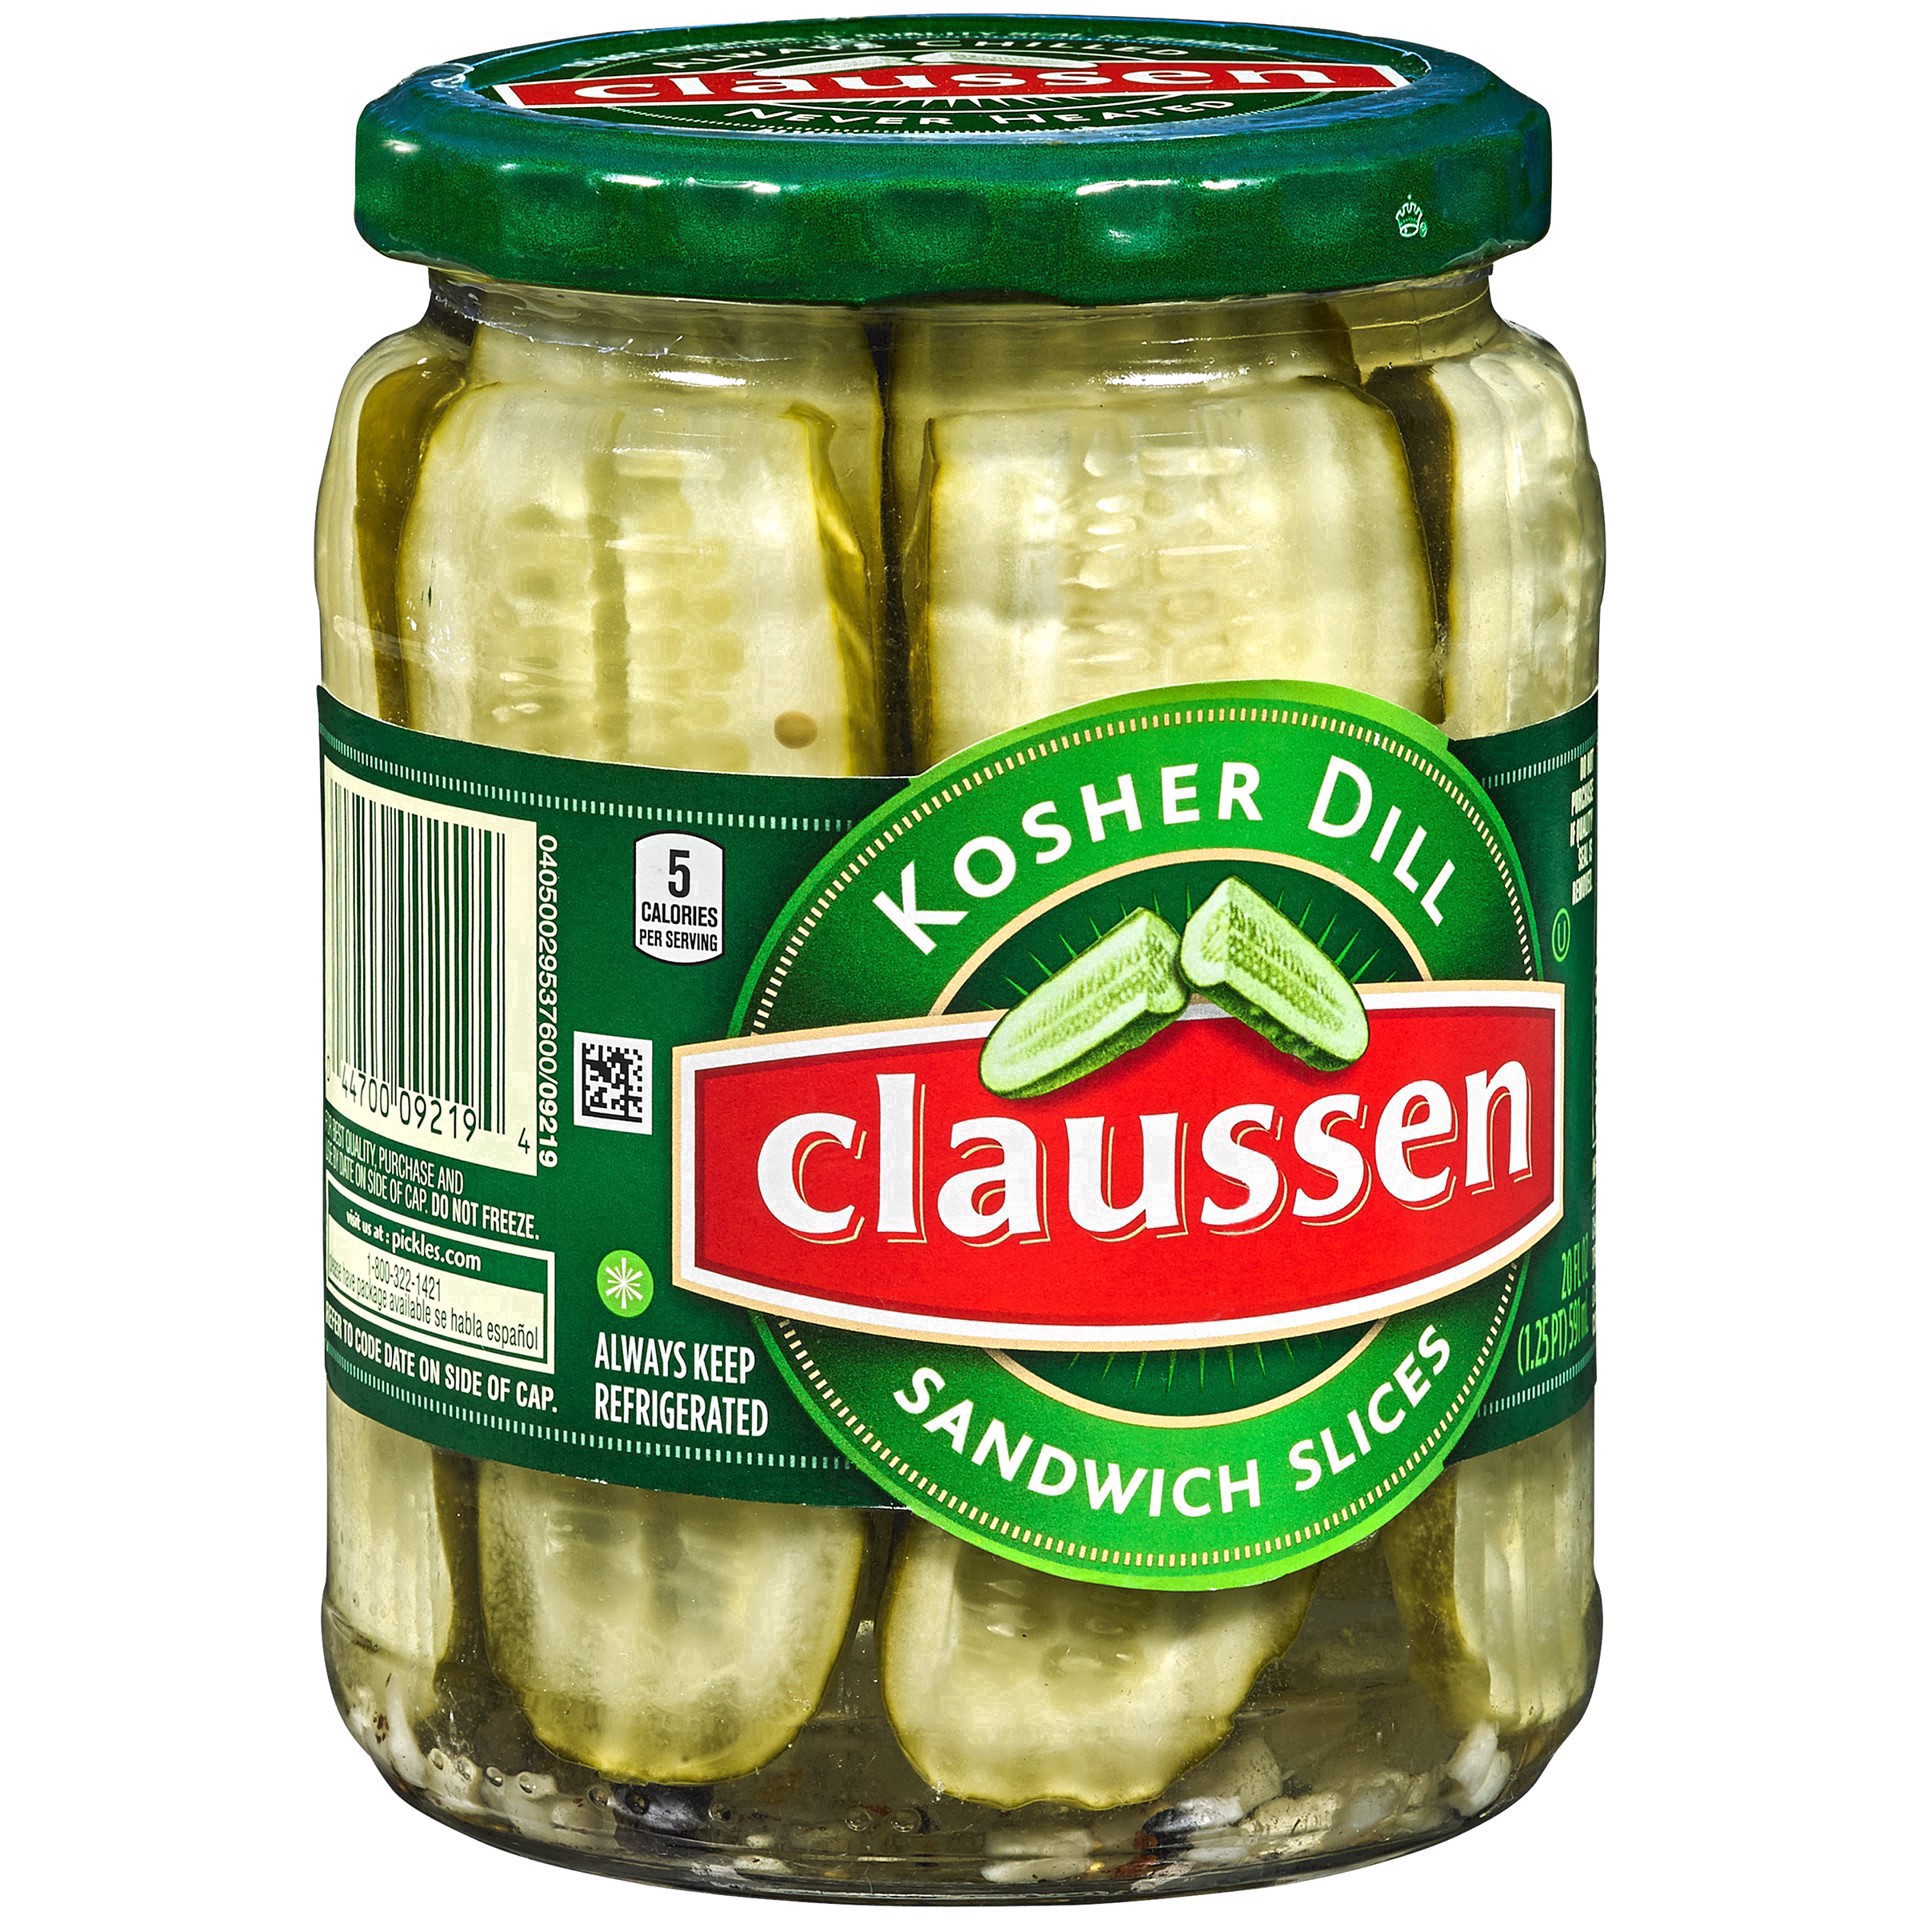 slide 59 of 144, Claussen Kosher Dill Pickle Sandwich Slices, 20 fl. oz. Jar, 20 fl oz